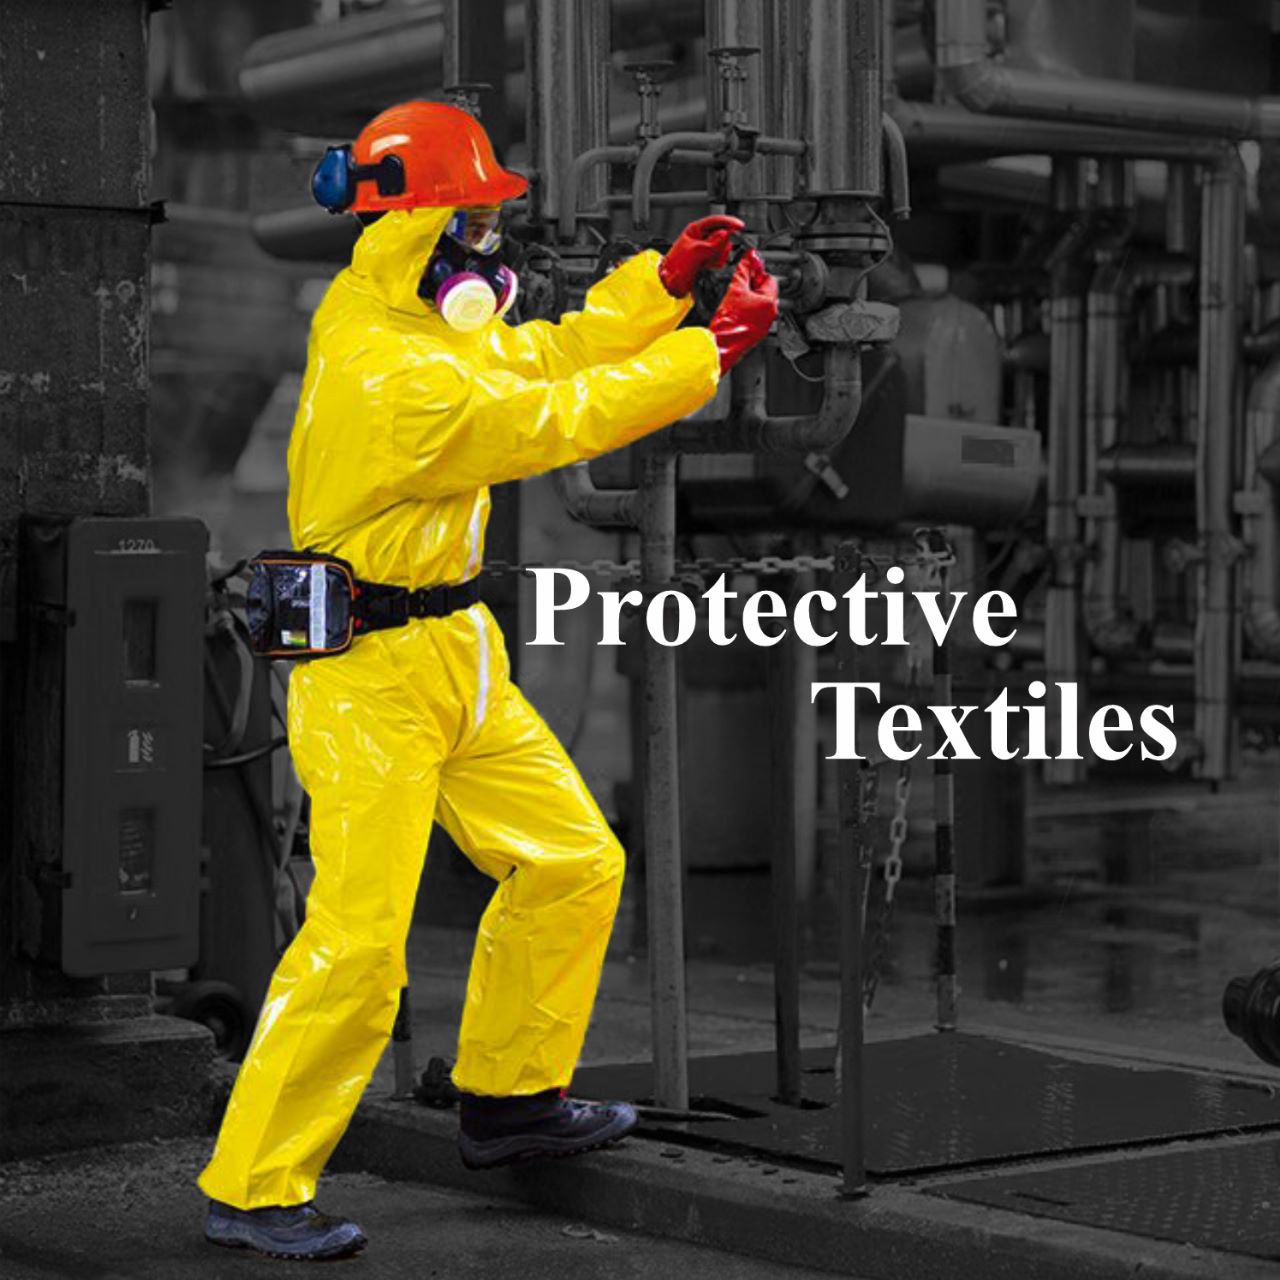 Protective Textiles – Ensuring Safety